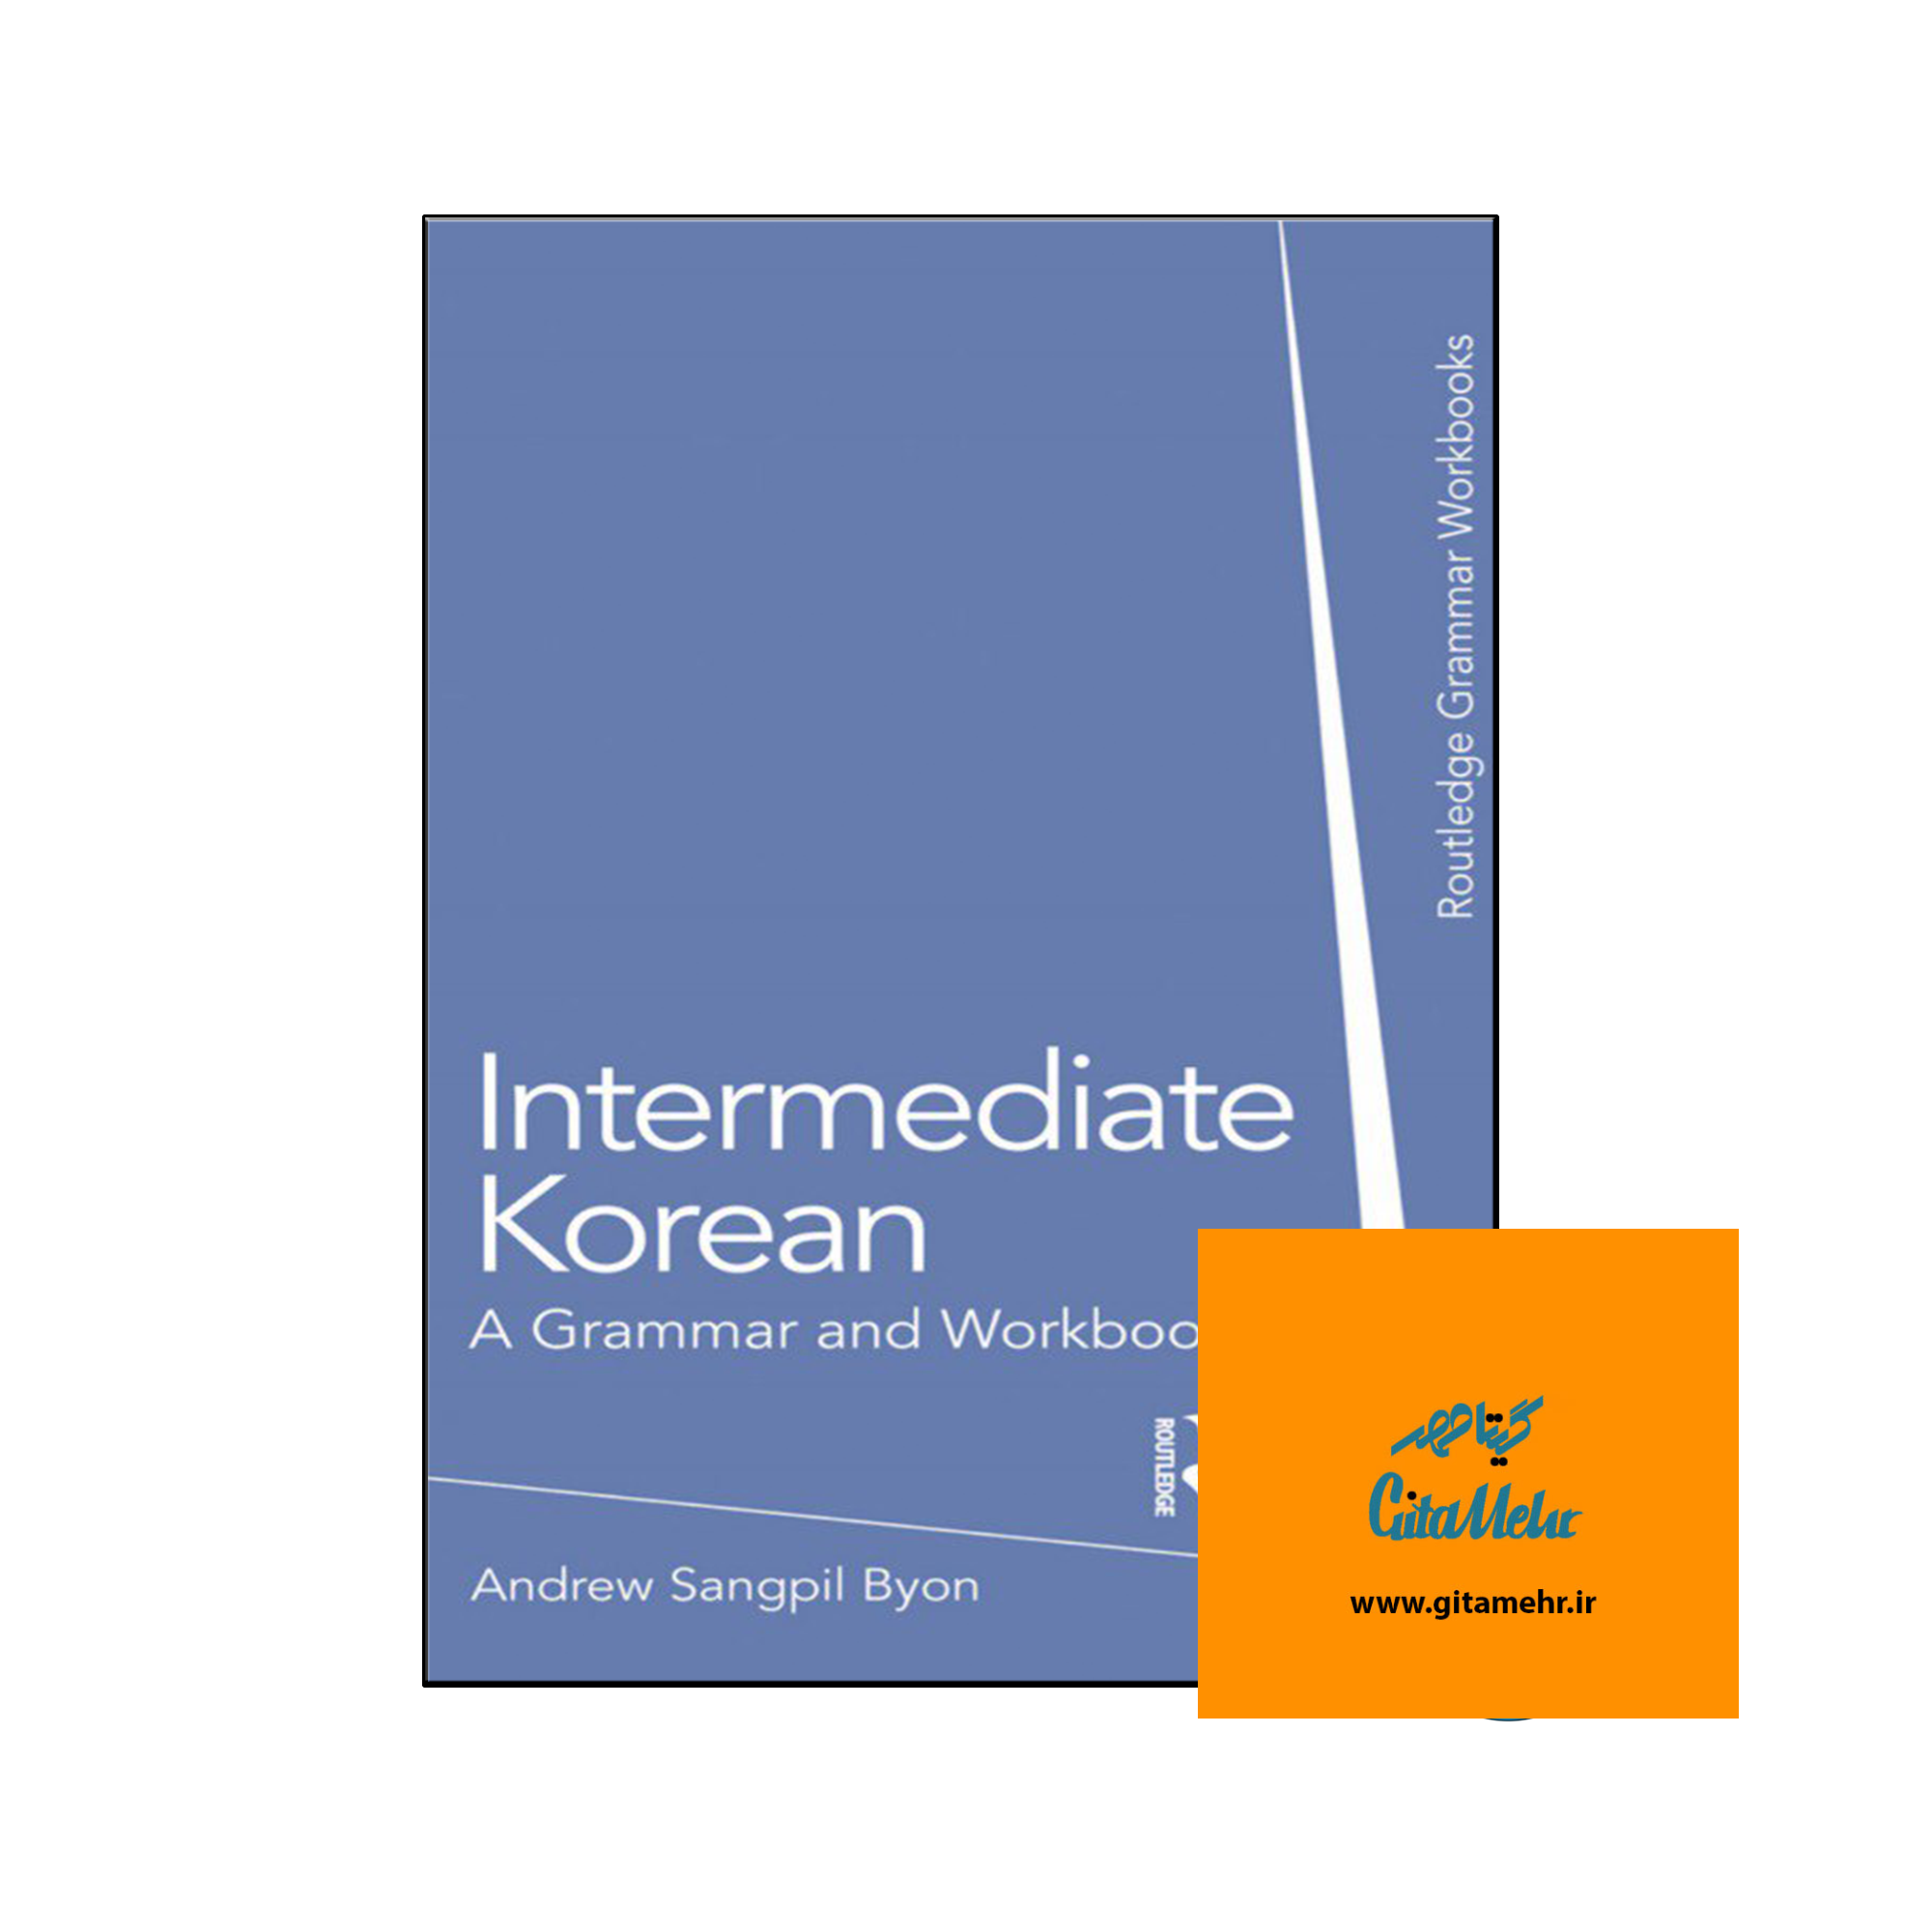 daa9d8aad8a7d8a8 intermediate korean a grammar and workbook 65ec8ca8a6c7d